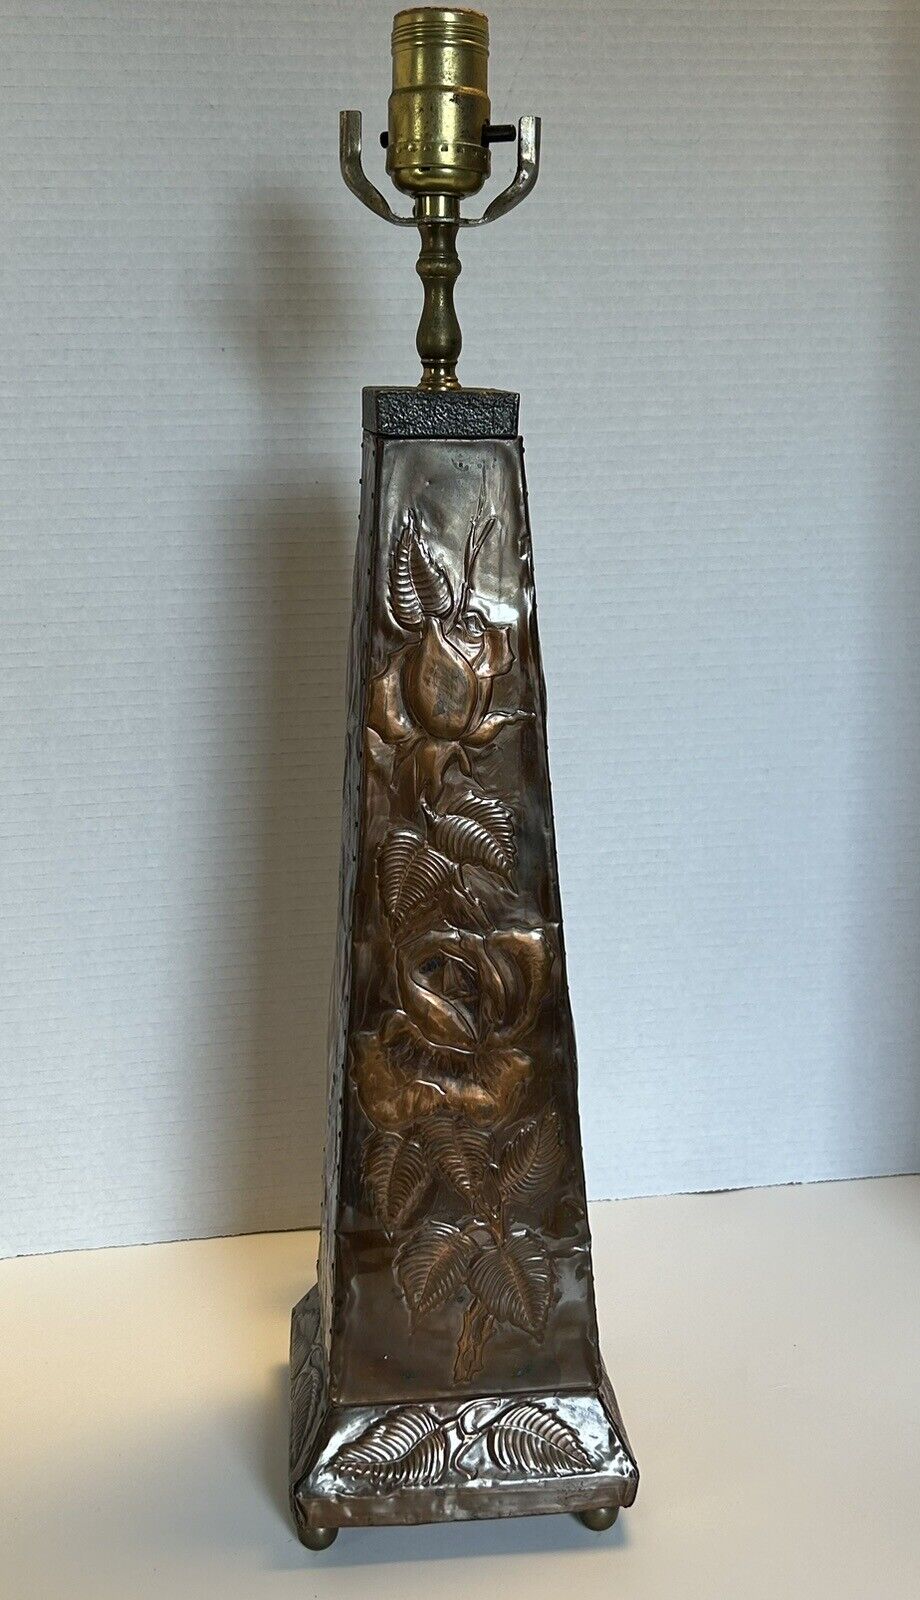 Obelisk-Shaped  Embossed Arts & Crafts?? Copper Floral Design Lamp Base - Works